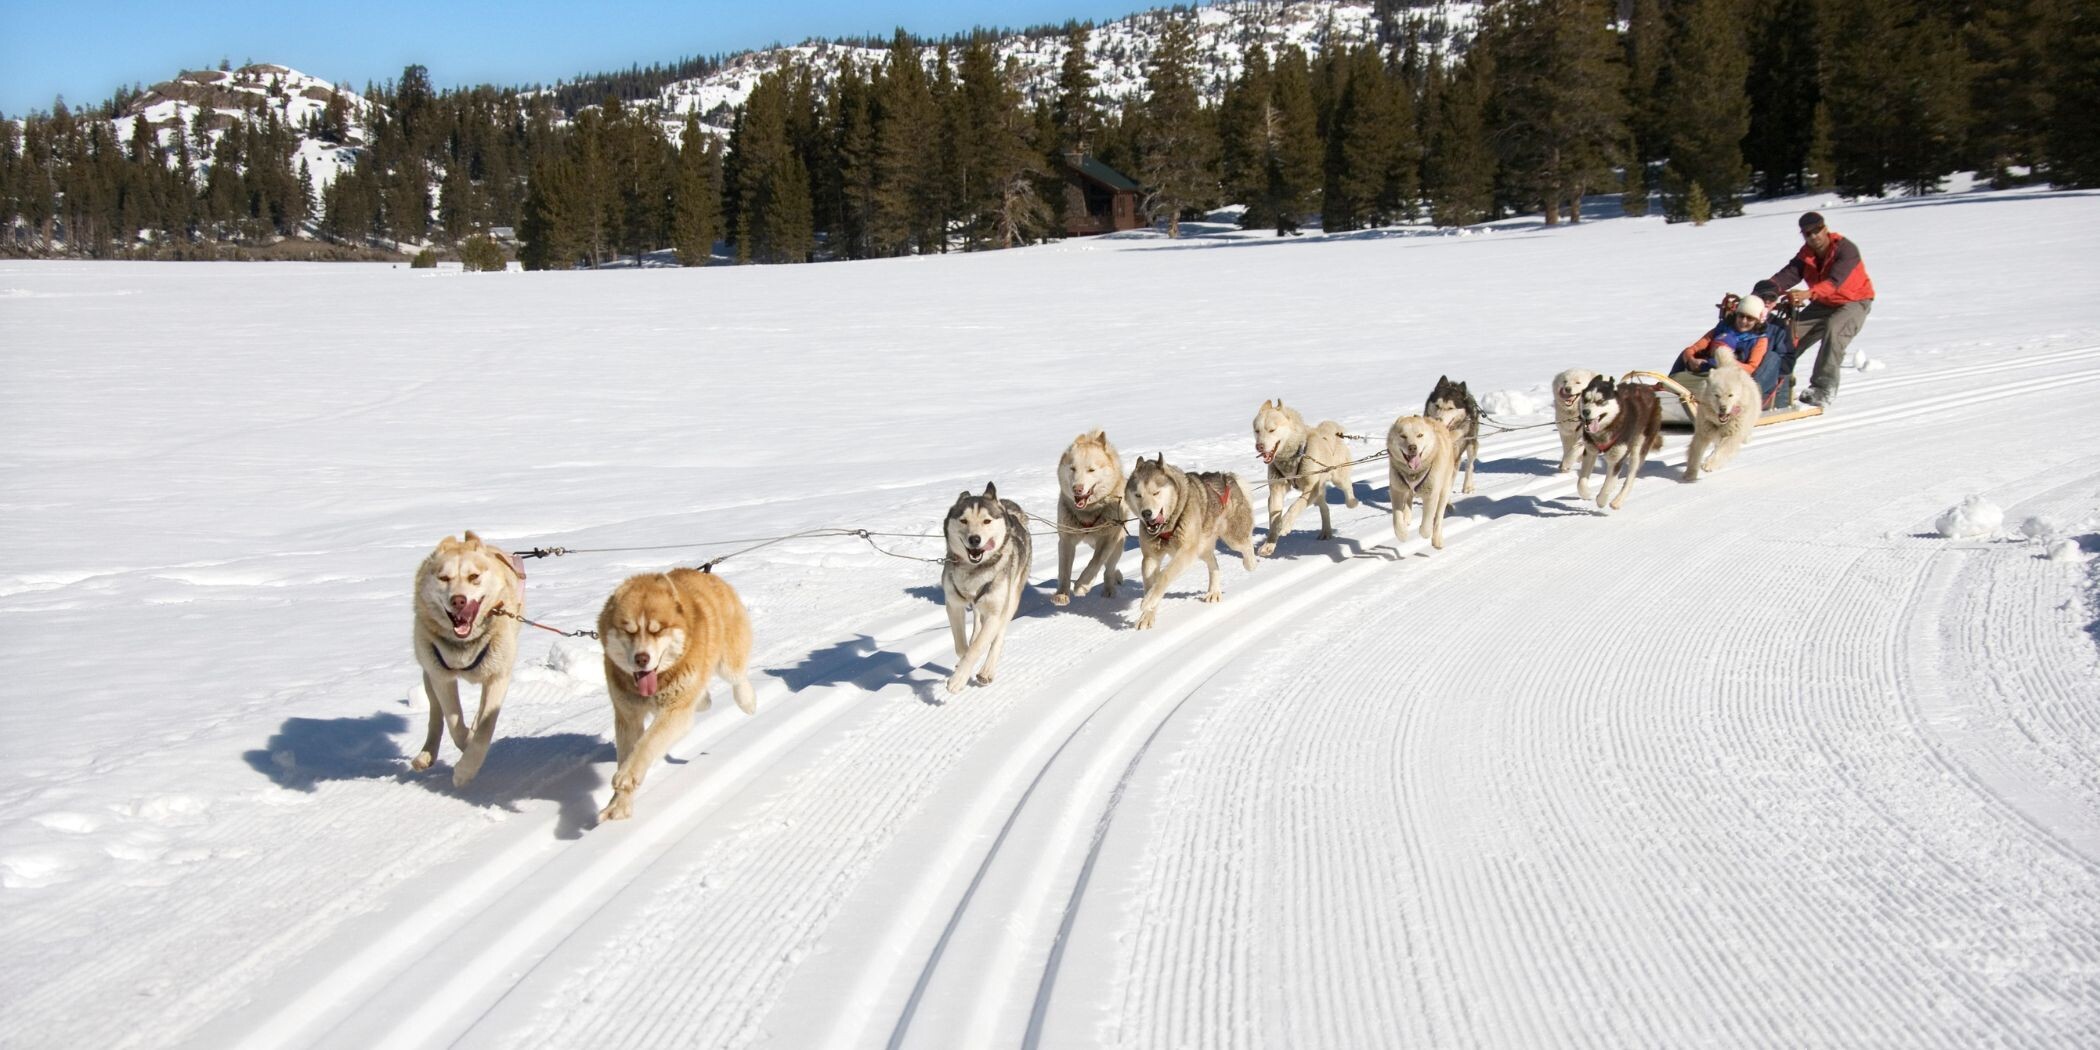 Undici cani trainano una slitta con tre persone lungo una pista da sci di fondo nella neve.